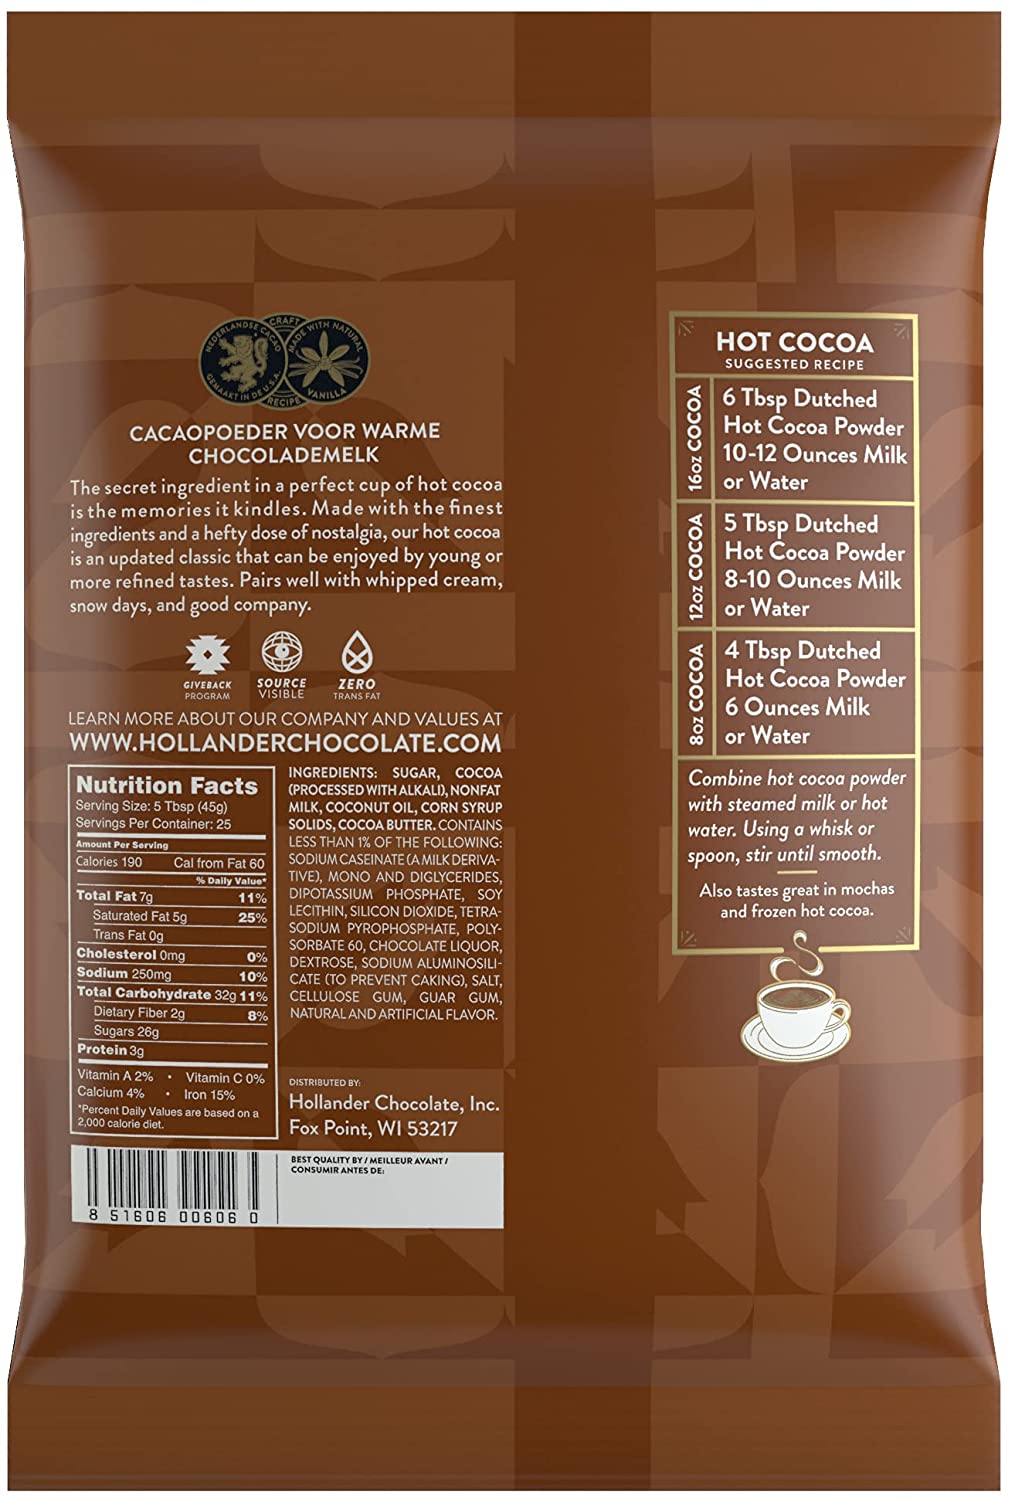 Hollander Cocoa - 2.5 lb. Bulk Bag: Original Premium Hot Cocoa